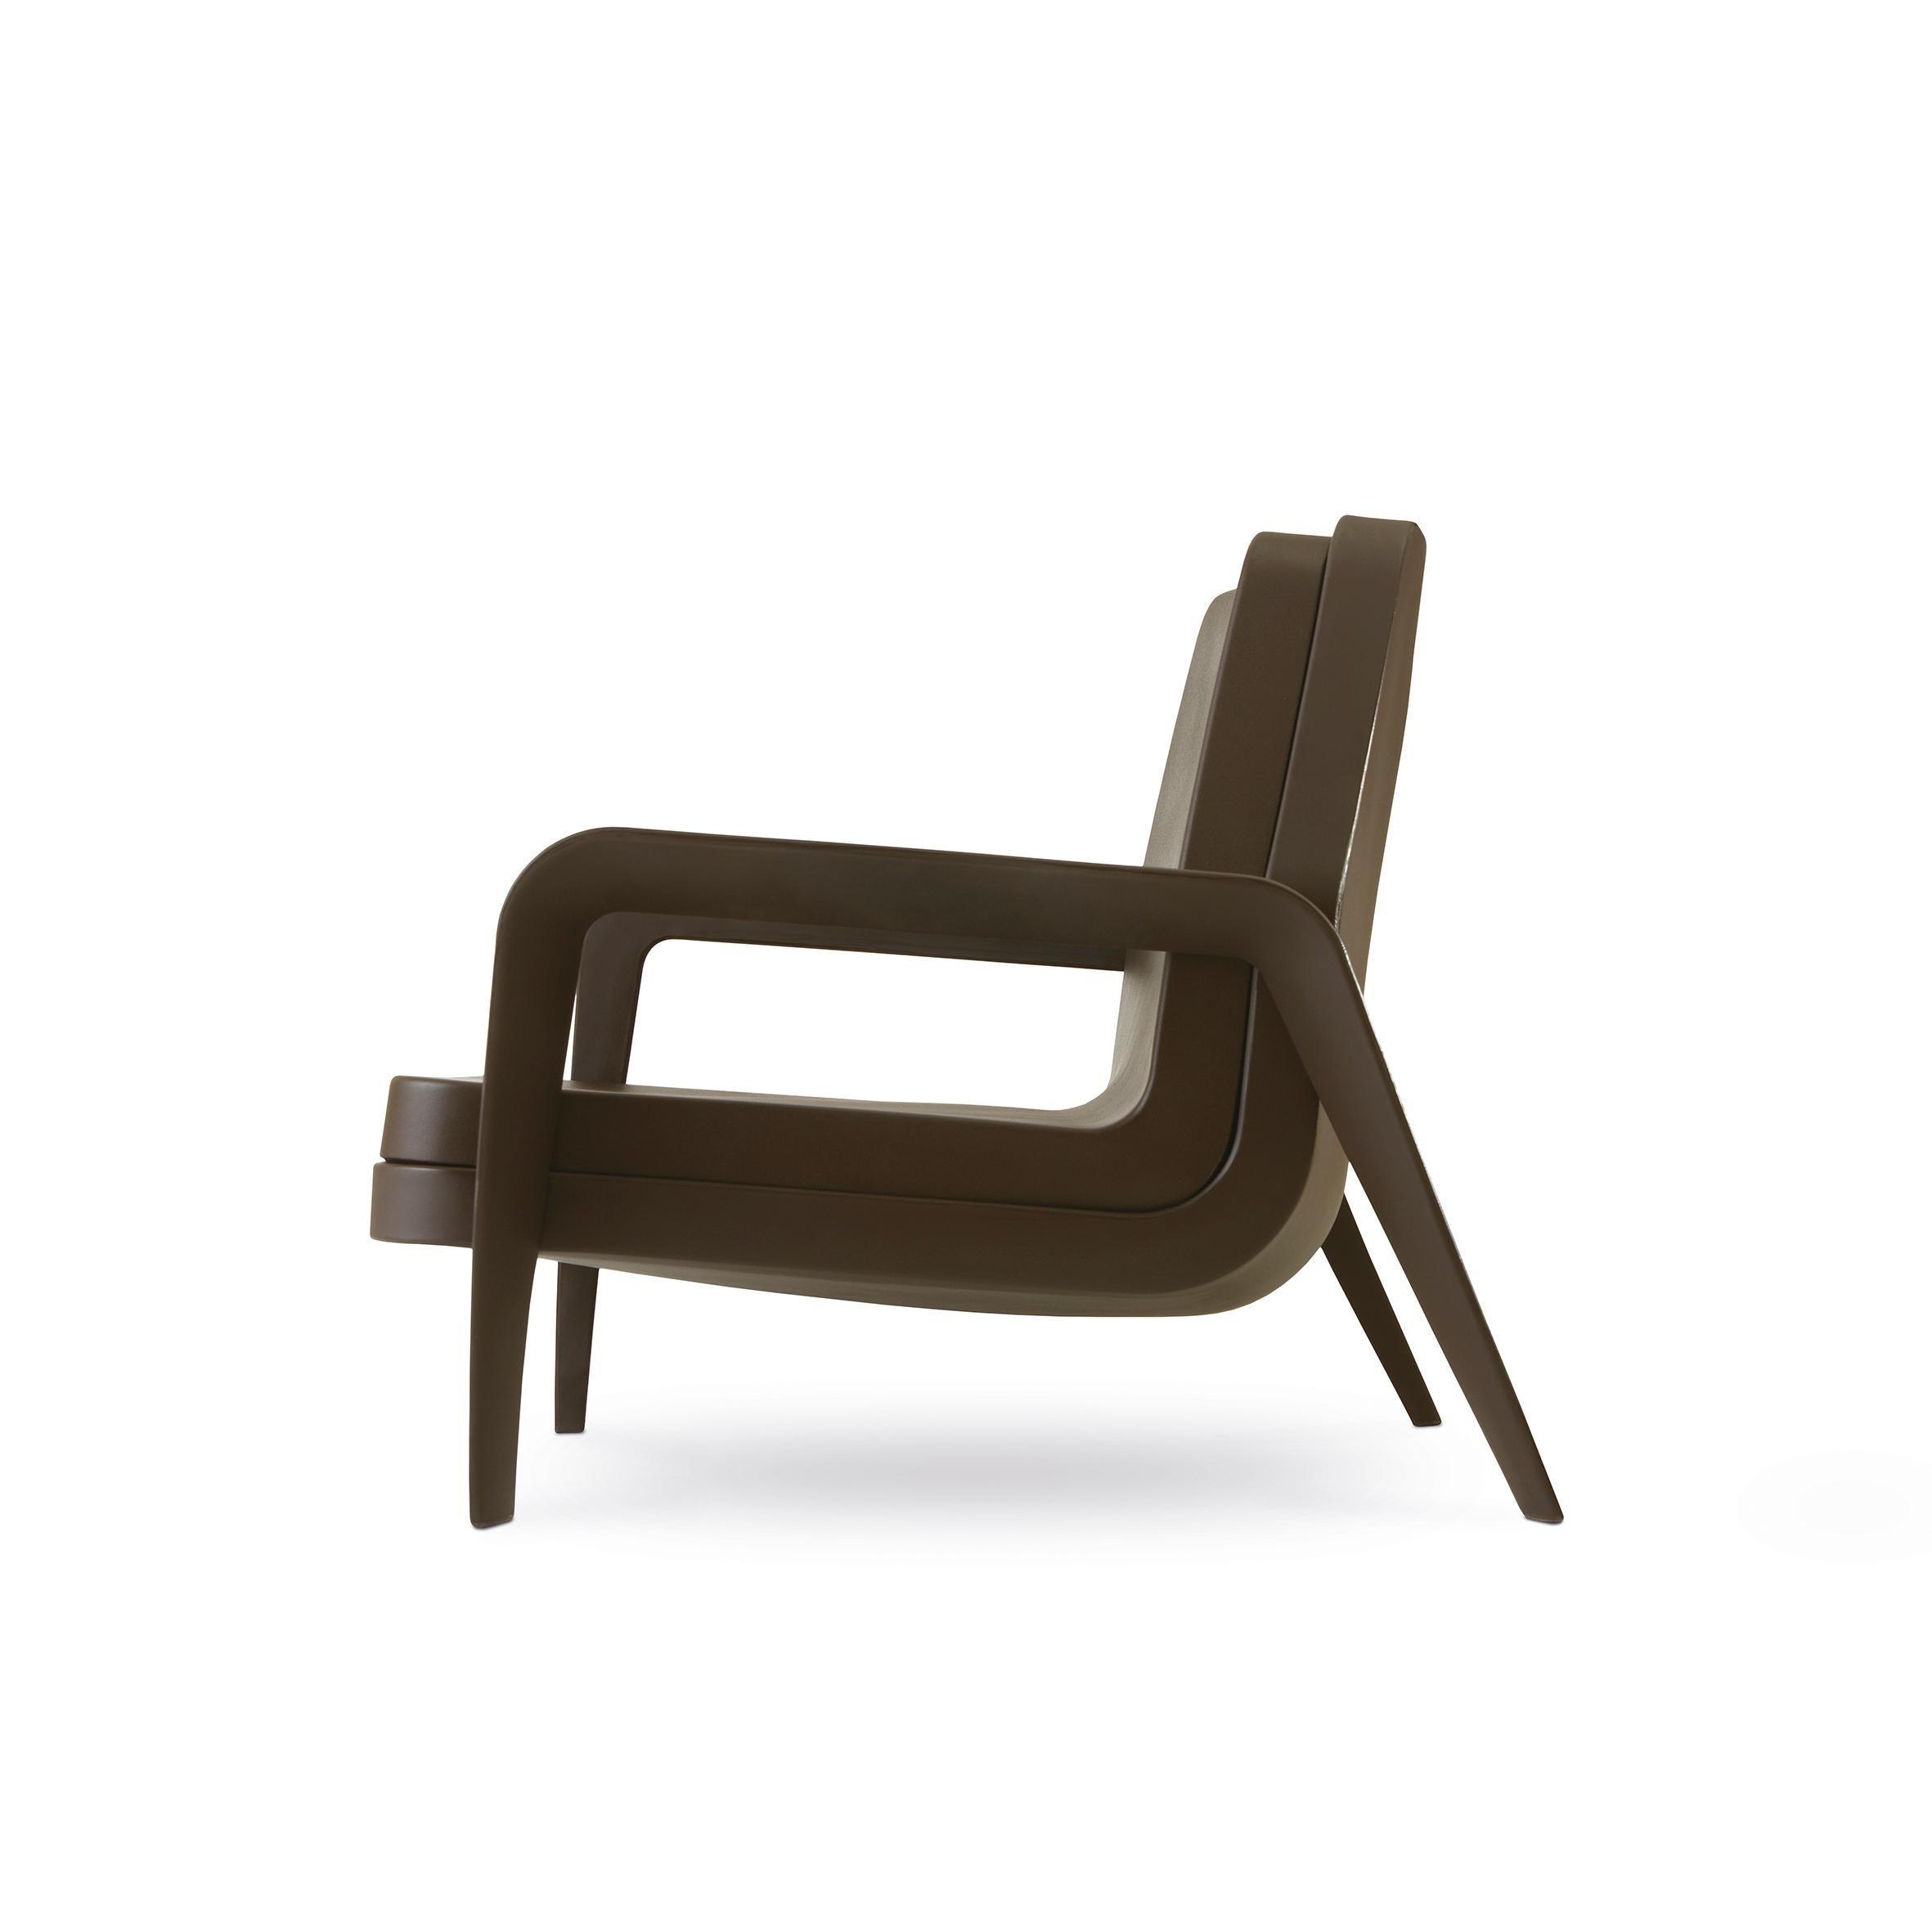 Der Designer Marc Sadler entwirft einen Retro-Sessel, inspiriert von den amerikanischen Swinging '50s, mit ihrem einzigartigen und progressiven Stil. America ist ein eleganter Sitz, eine perfekte Mischung aus modernen Materialien und